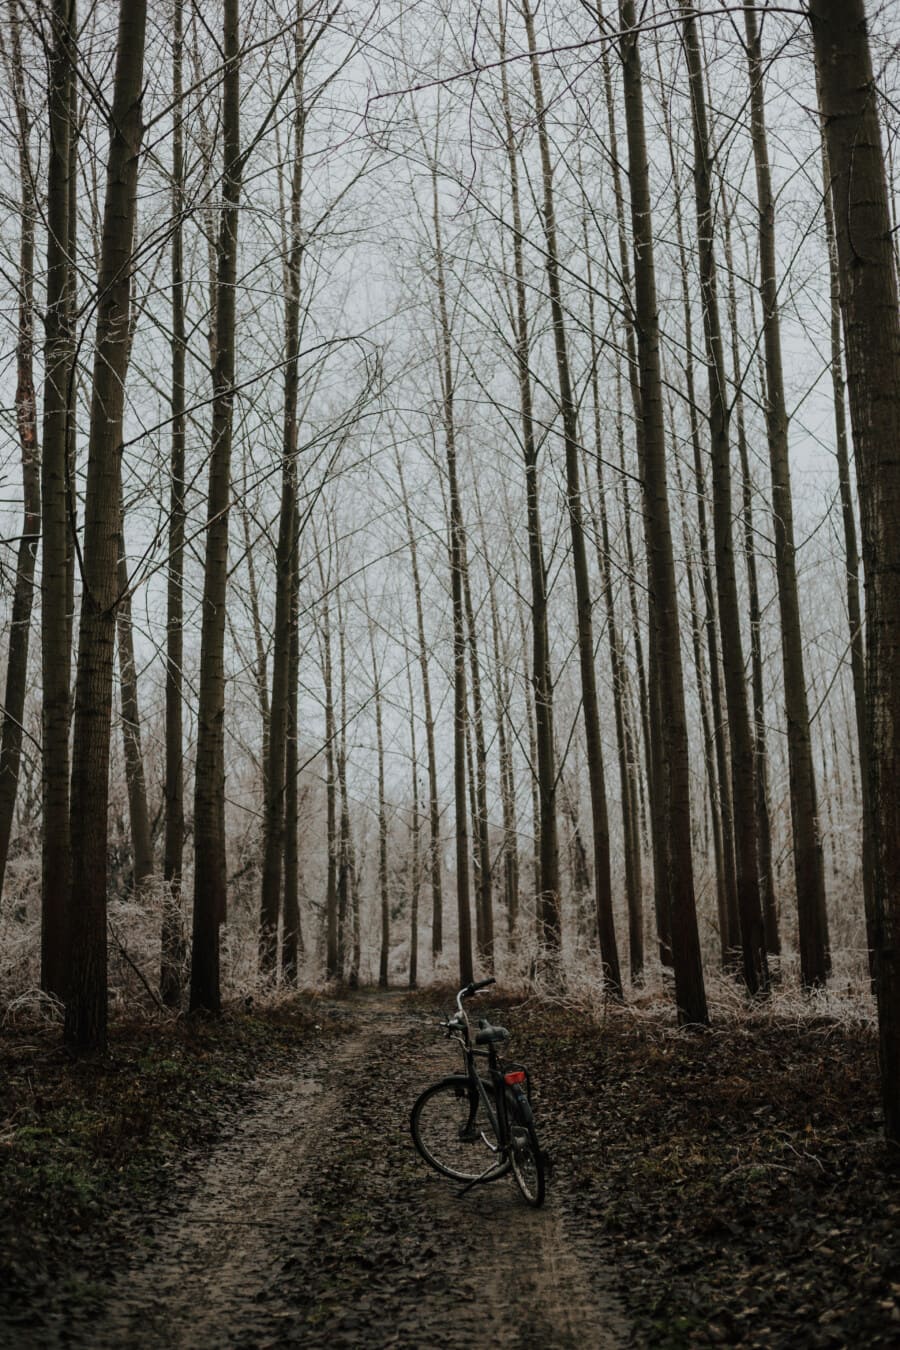 sentiero nel bosco, foresta, strada forestale, inverno, biciclette, freddo, rami, congelati, alberi, pioppo